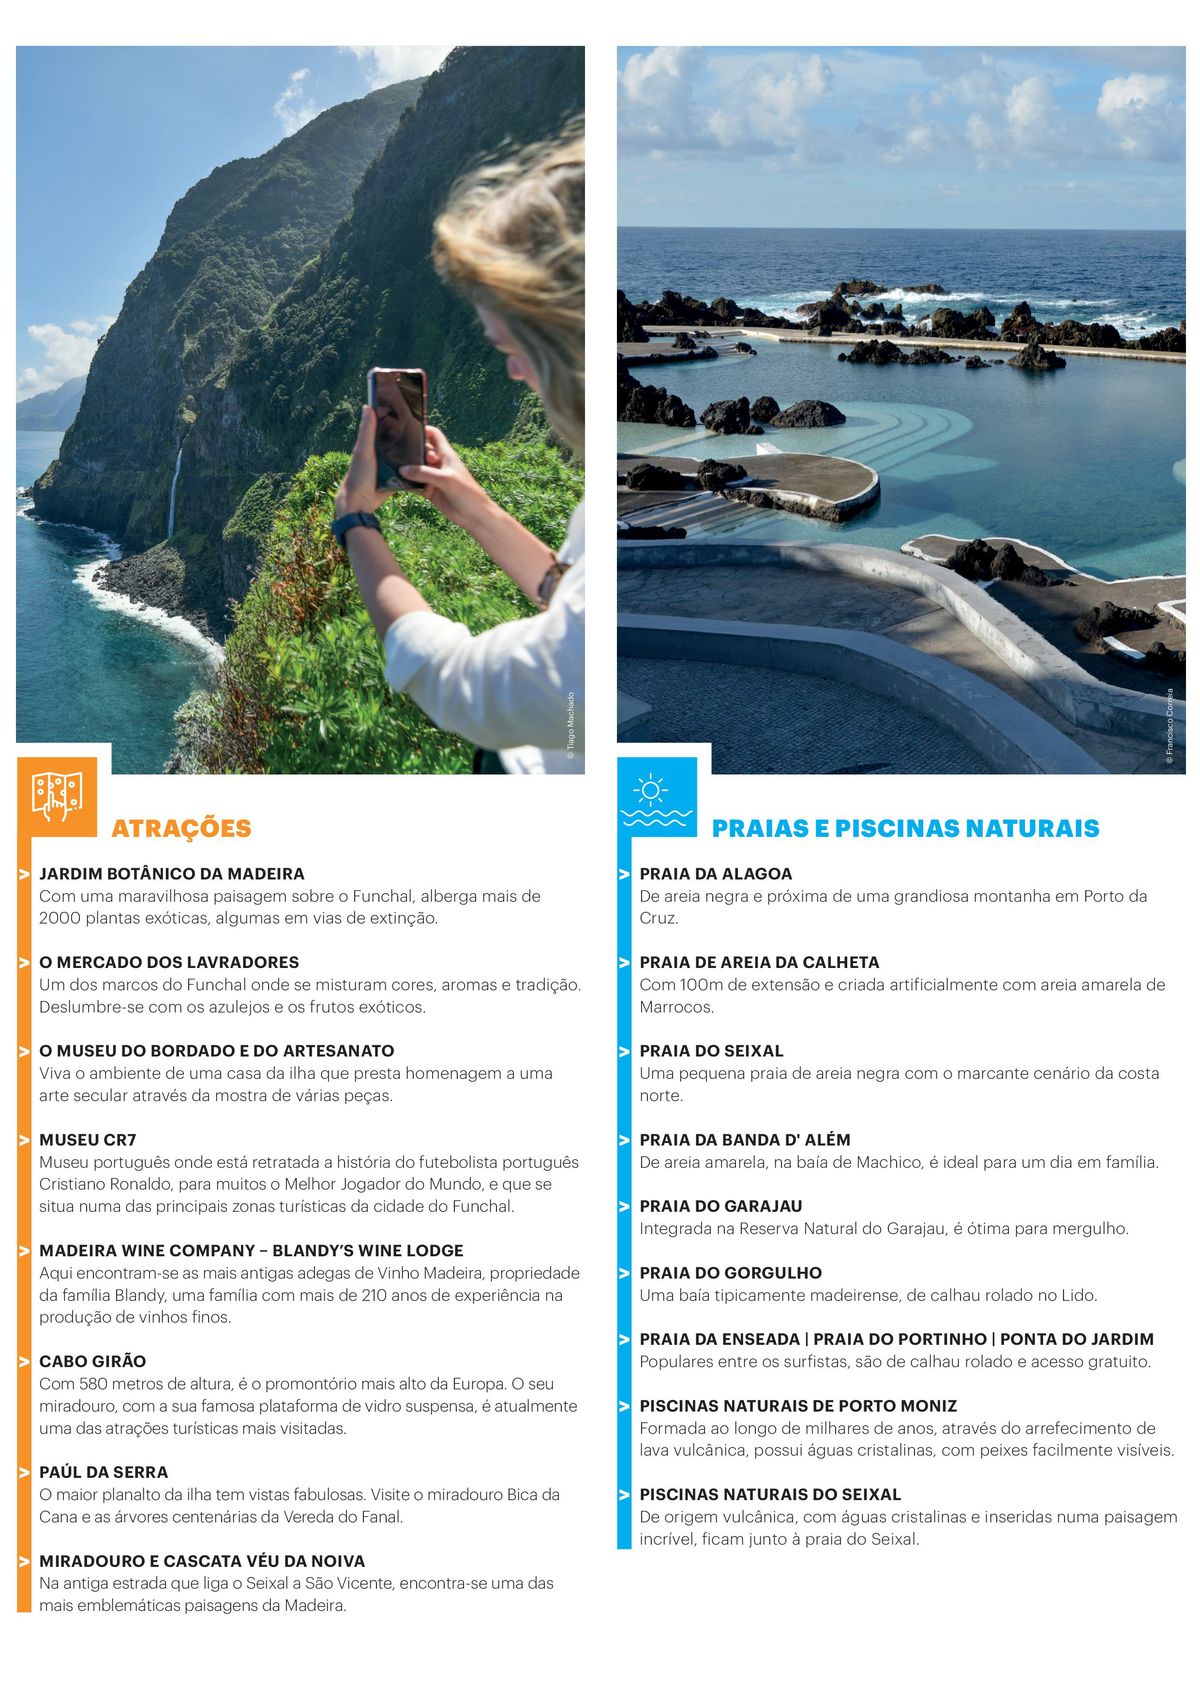 Ofertas em destaque de viagens na Madeira